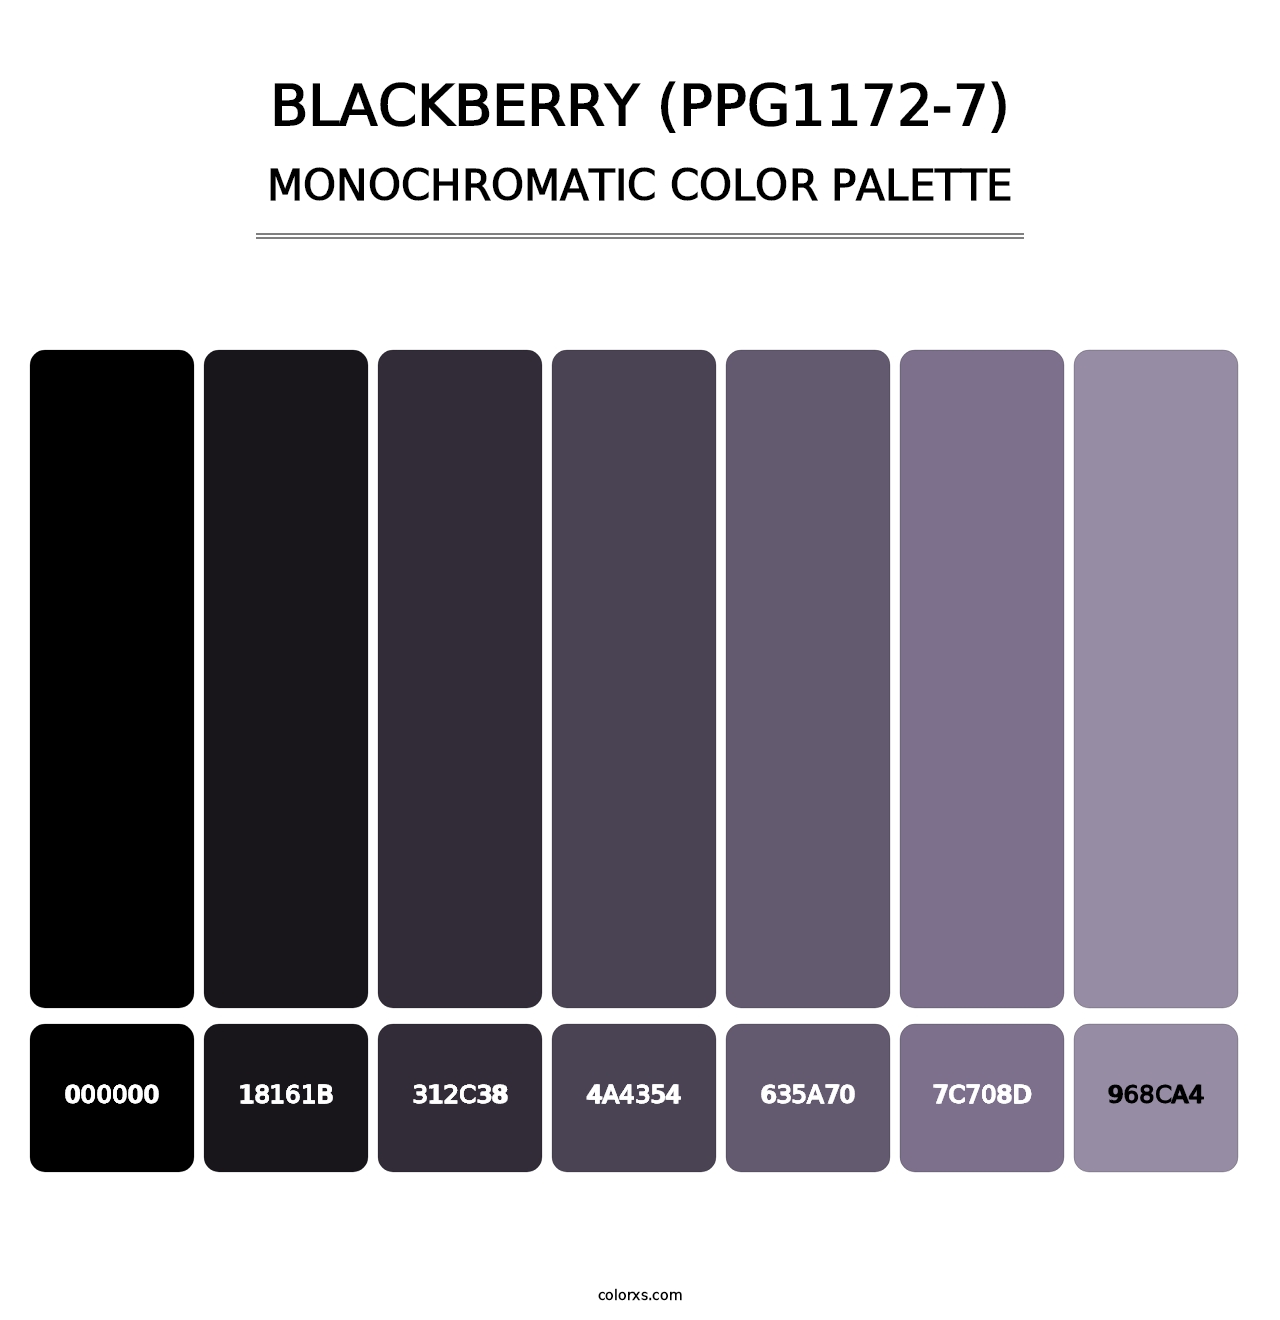 Blackberry (PPG1172-7) - Monochromatic Color Palette